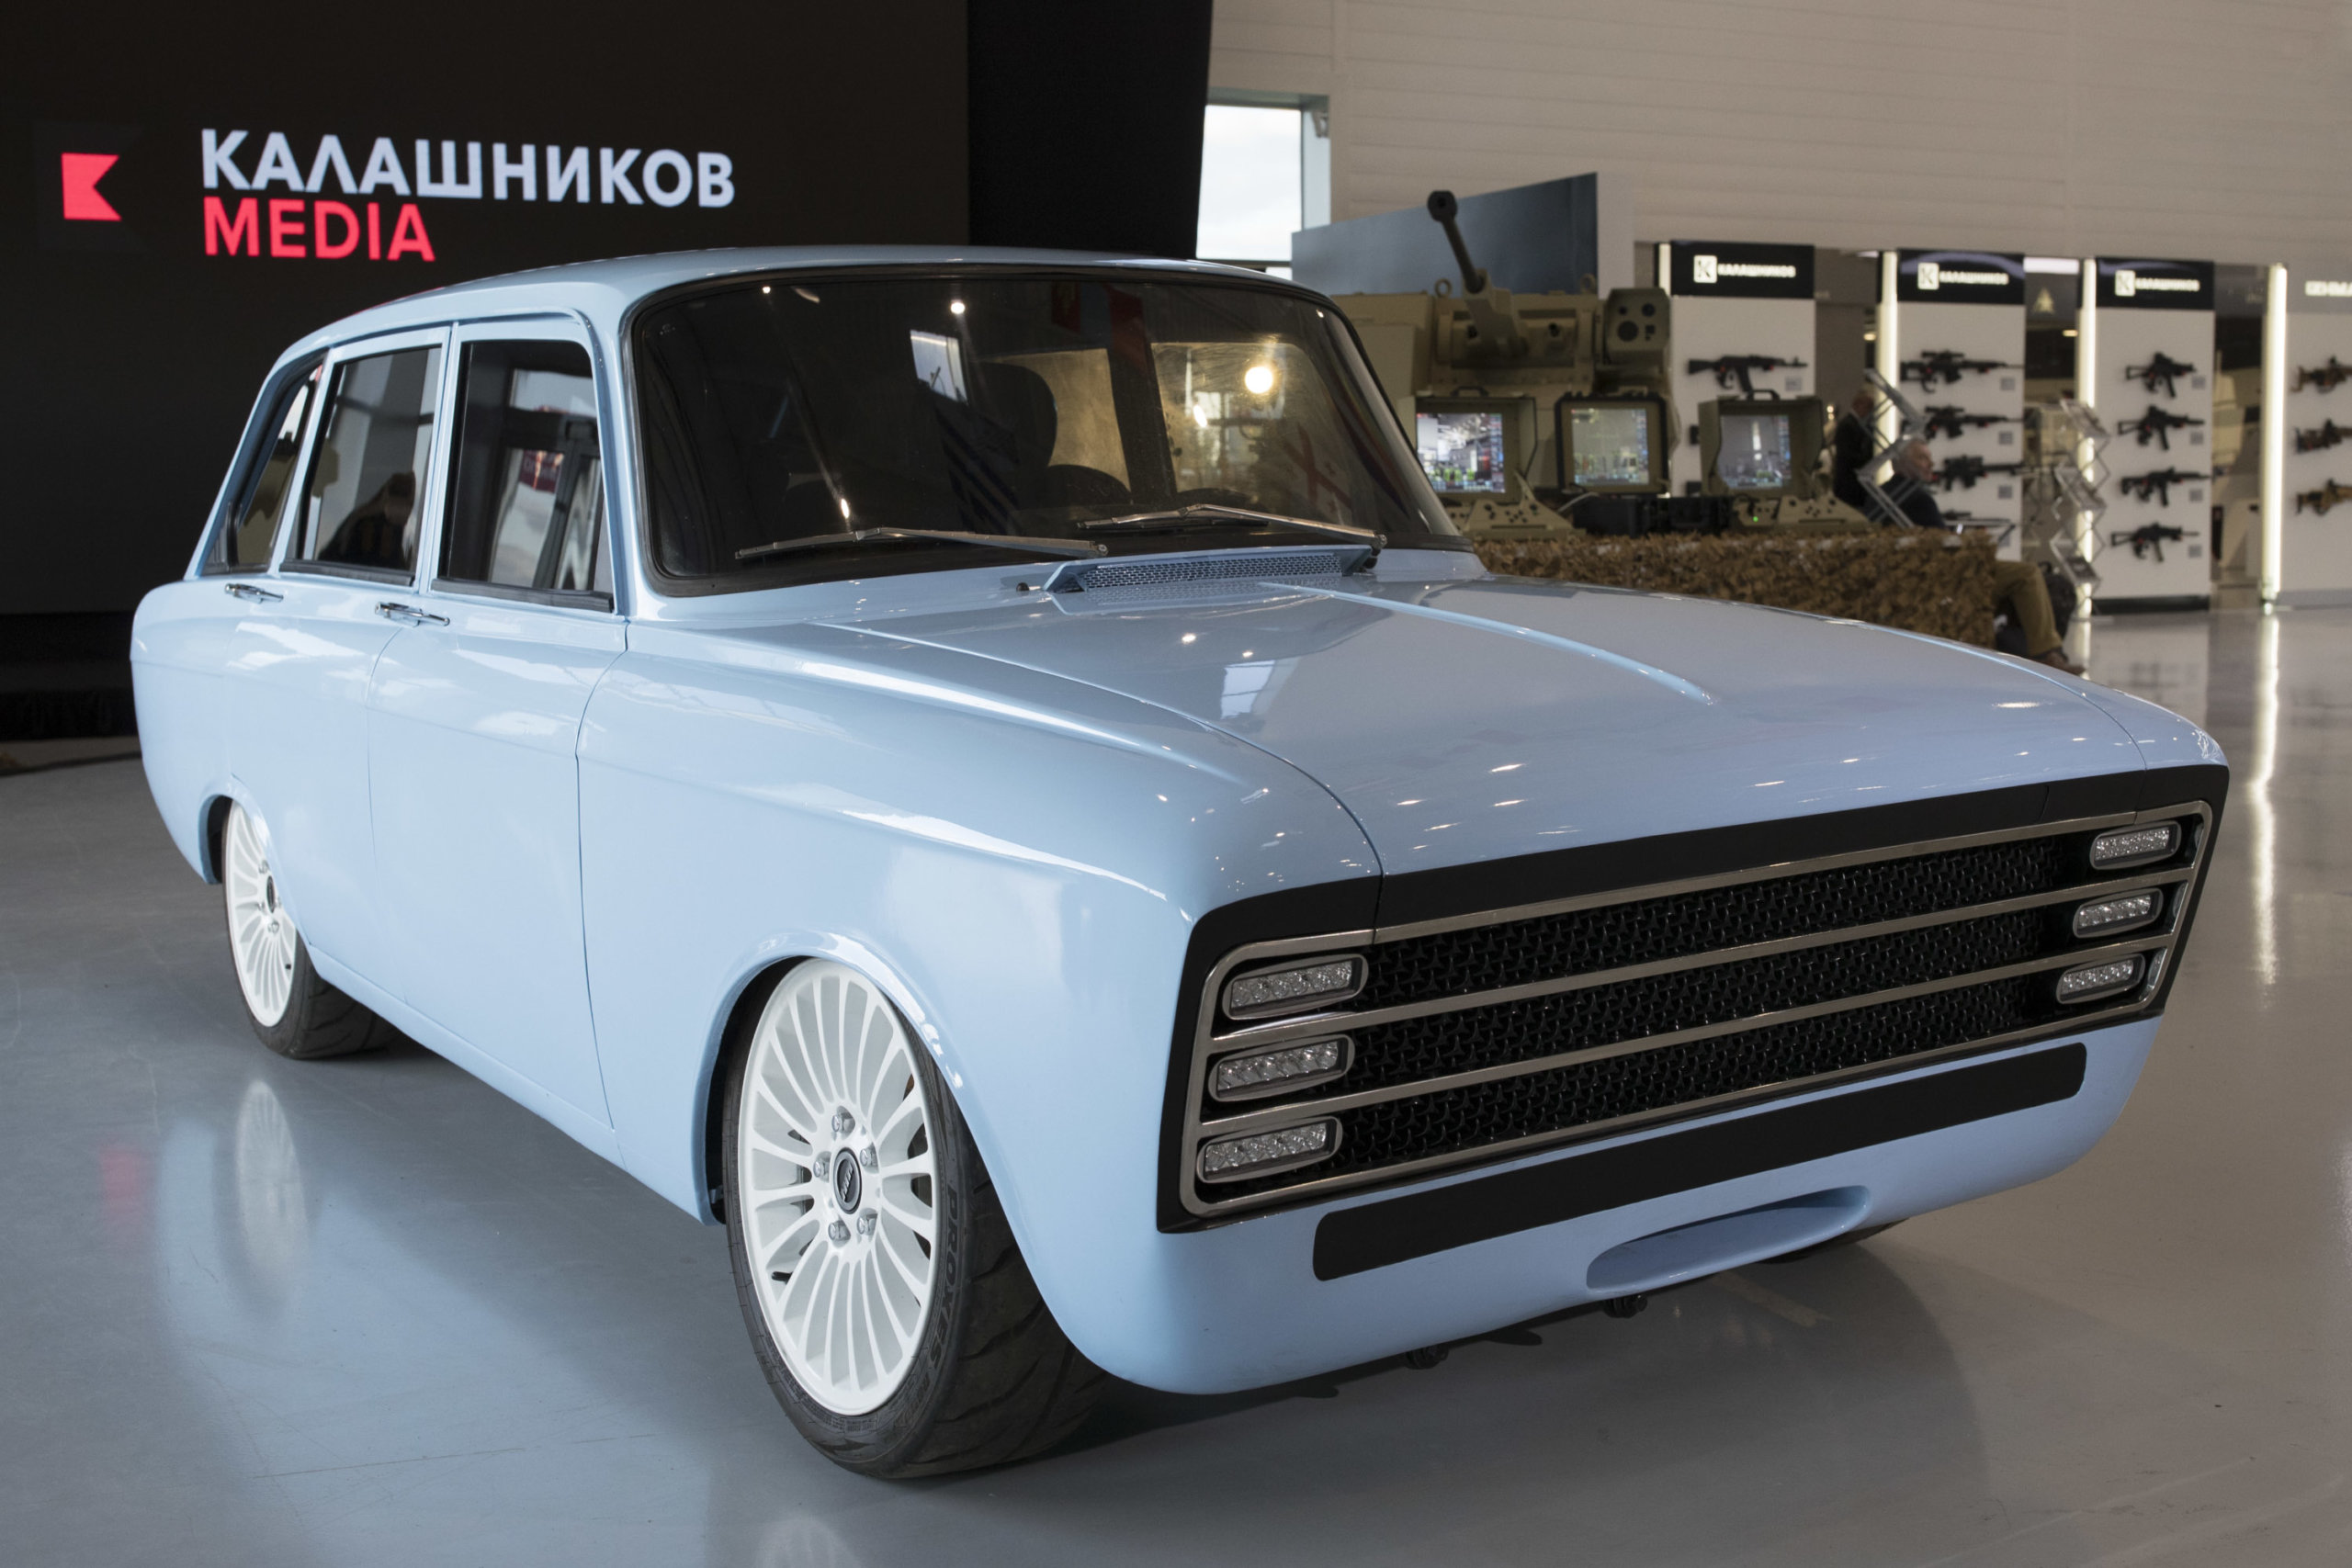 Kałasznikow: elektryczny samochód w stylu retro